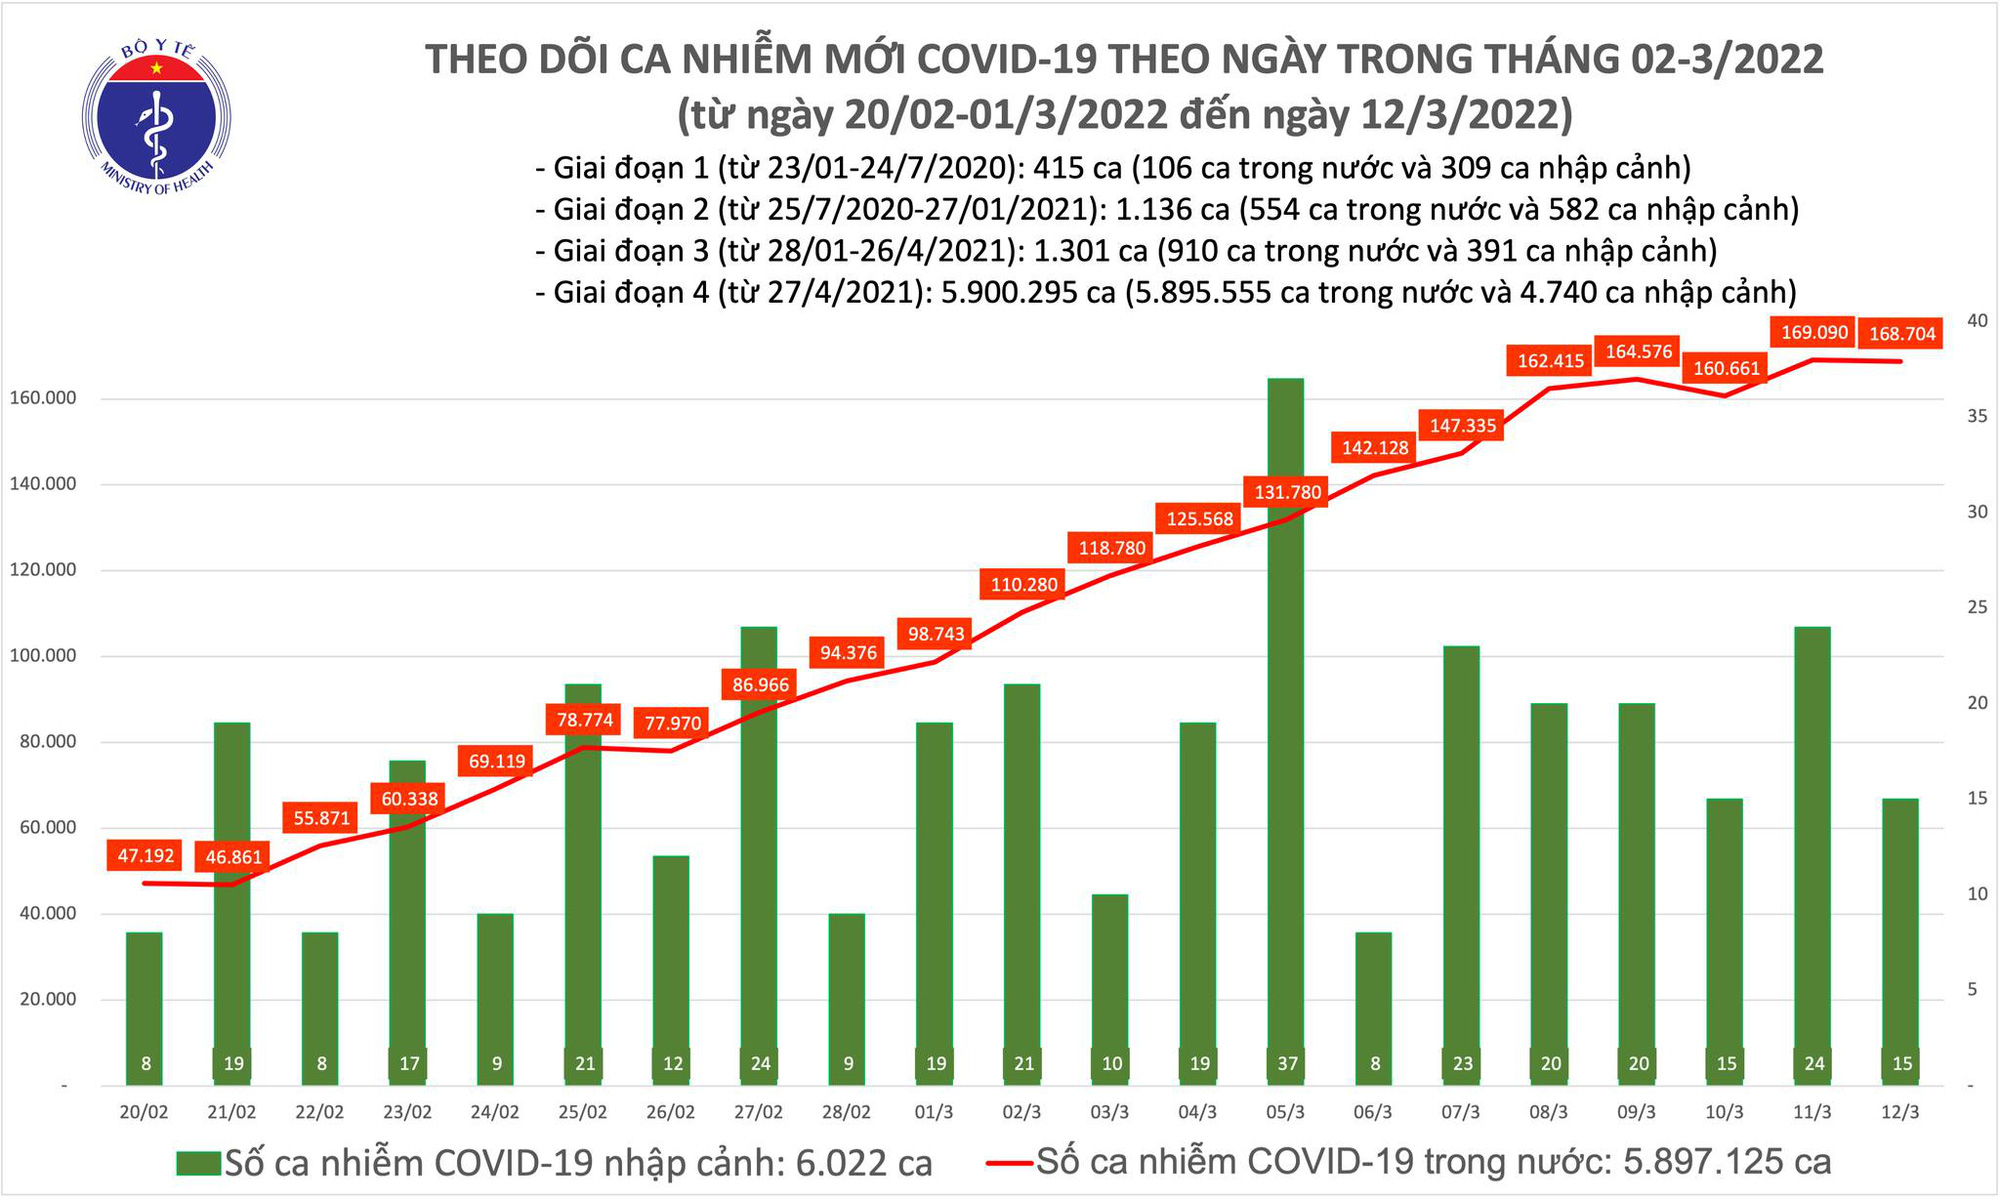 Cả nước có gần 169.000 ca Covid-19 mới, Hà Nội bổ sung thêm 195.000 ca  - Ảnh 1.